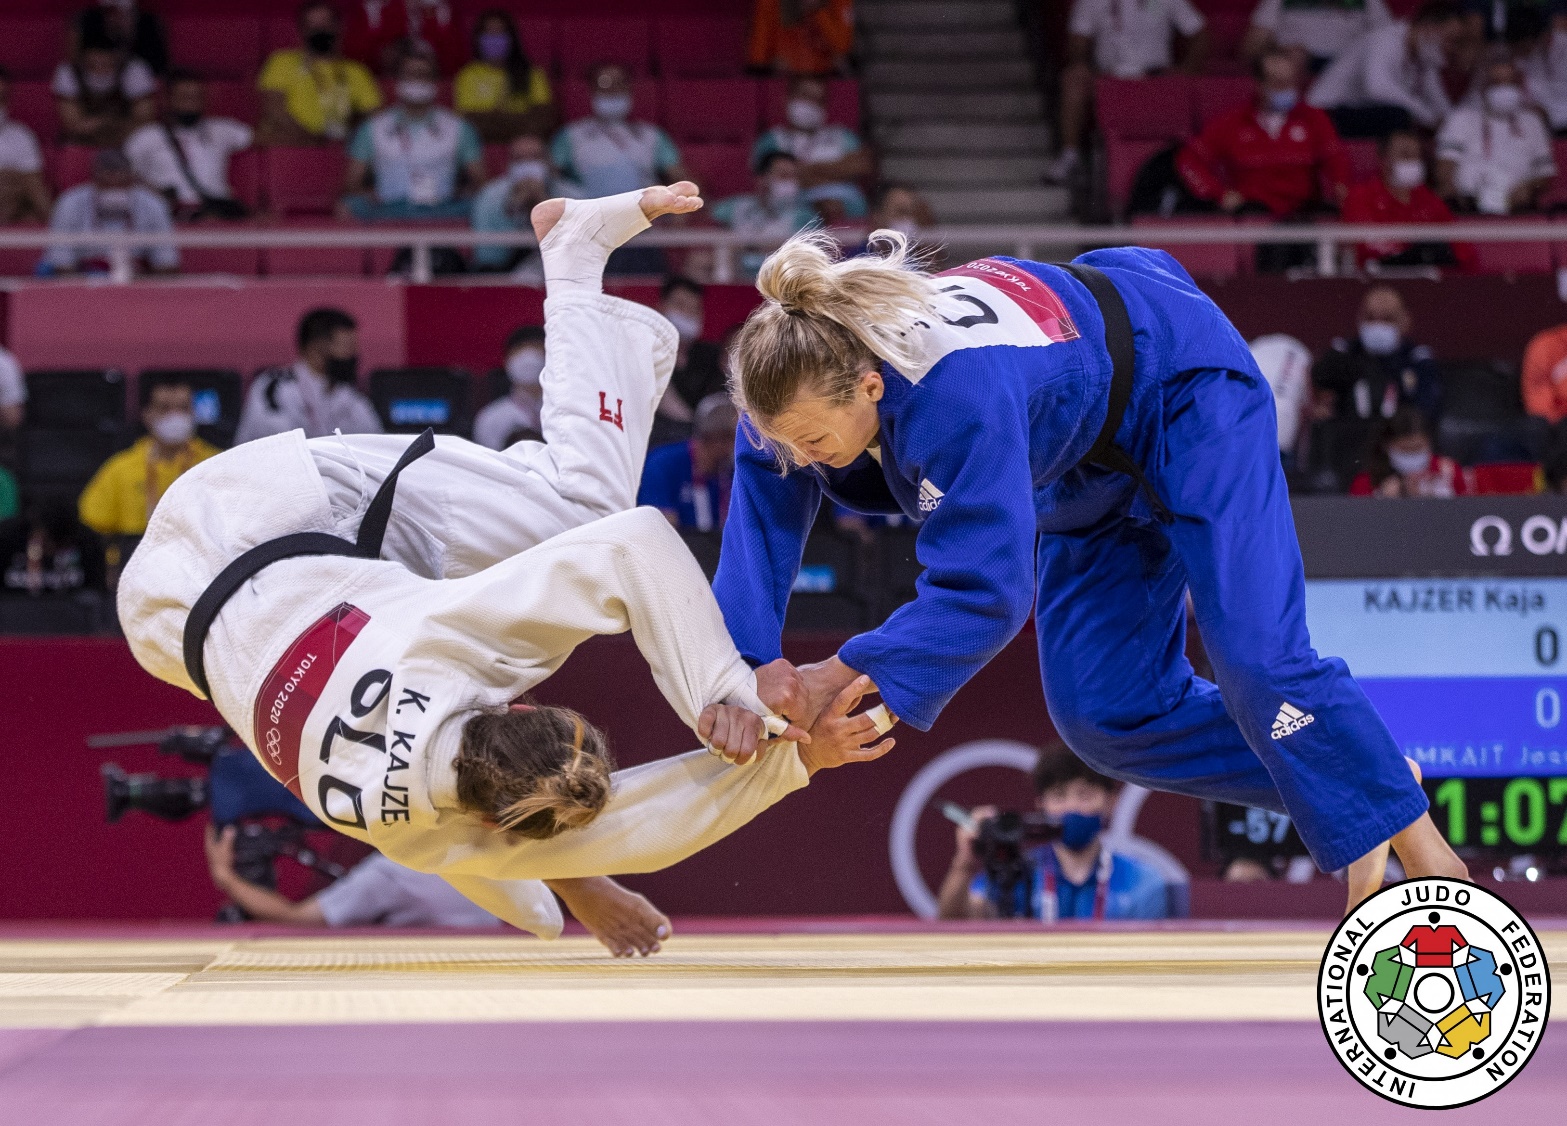 Women judokas in a match